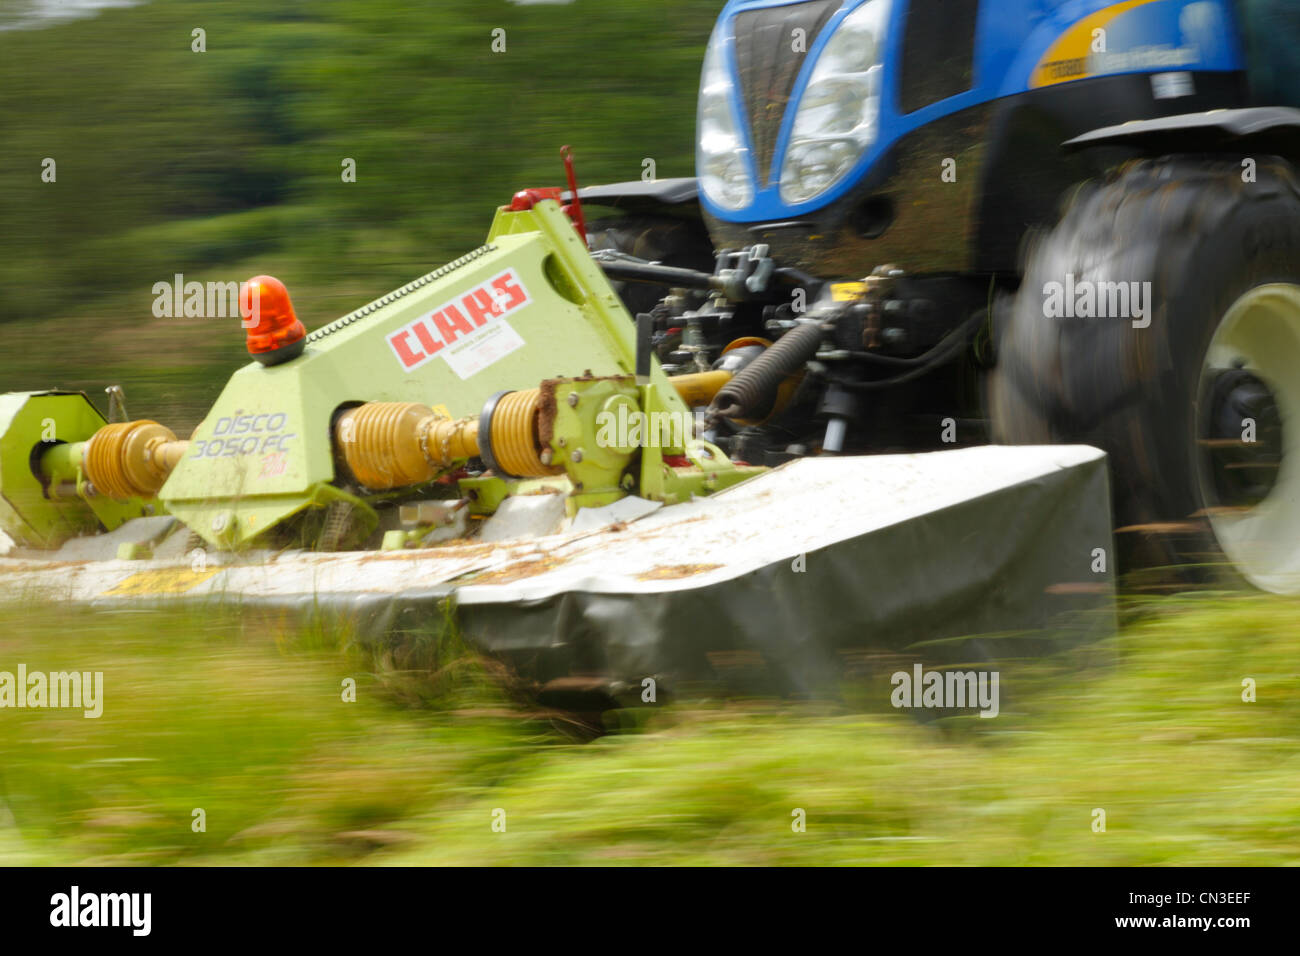 Auftragnehmer mit New Holland T6080 Traktor und Front montiert Claas Disco Rasenmäher mäht Rasen für die Silage. Stockfoto